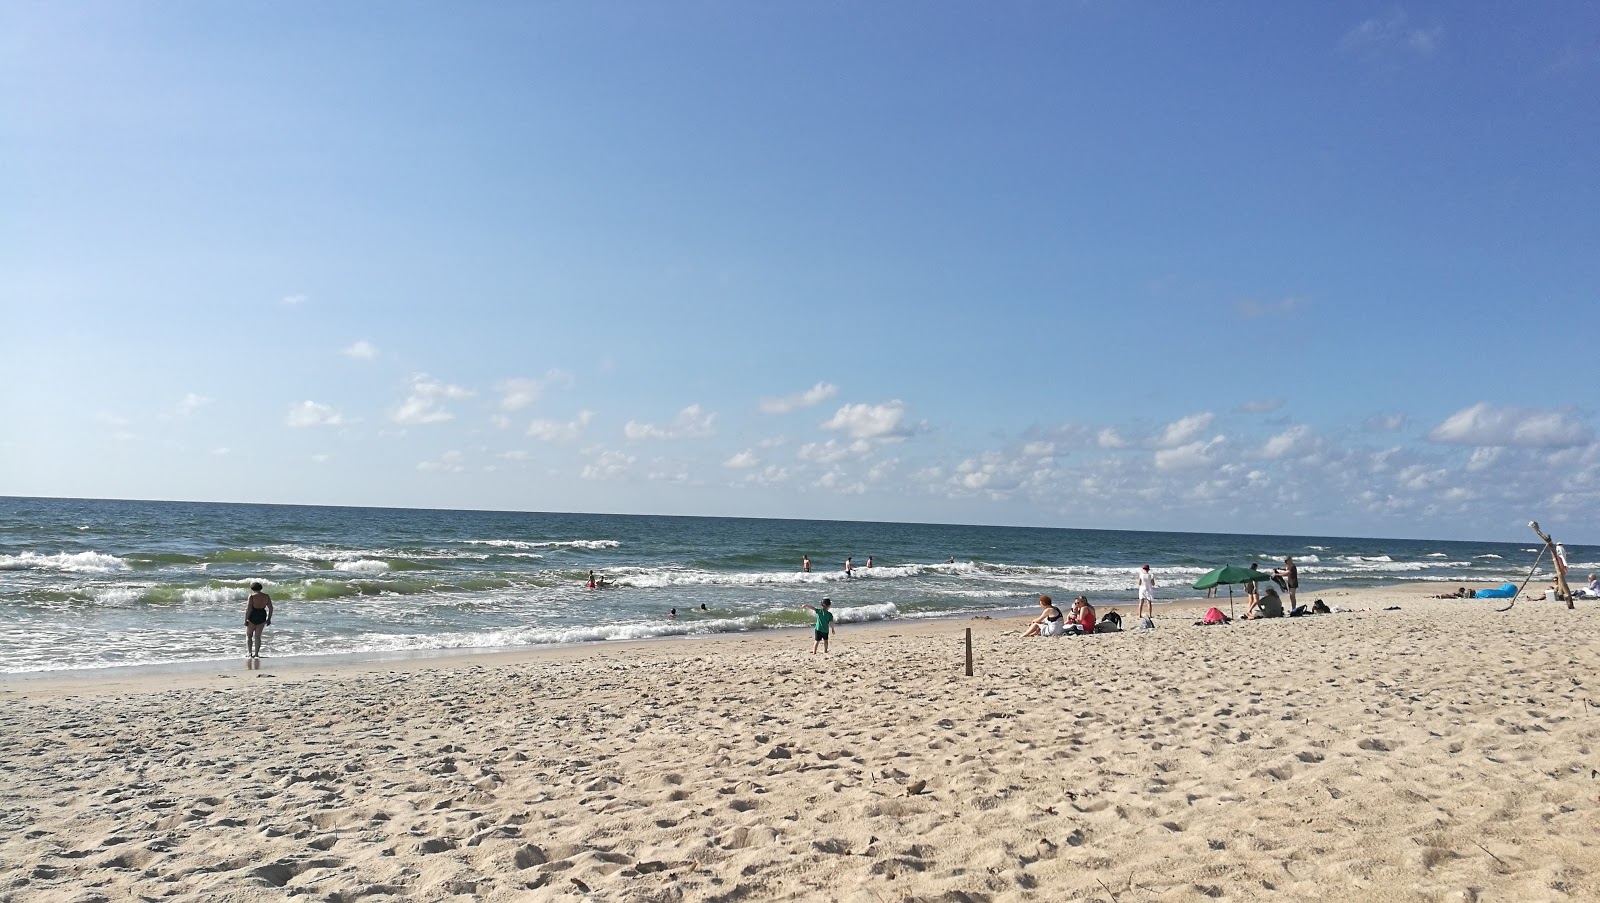 Juodkrante beach的照片 带有明亮的沙子表面